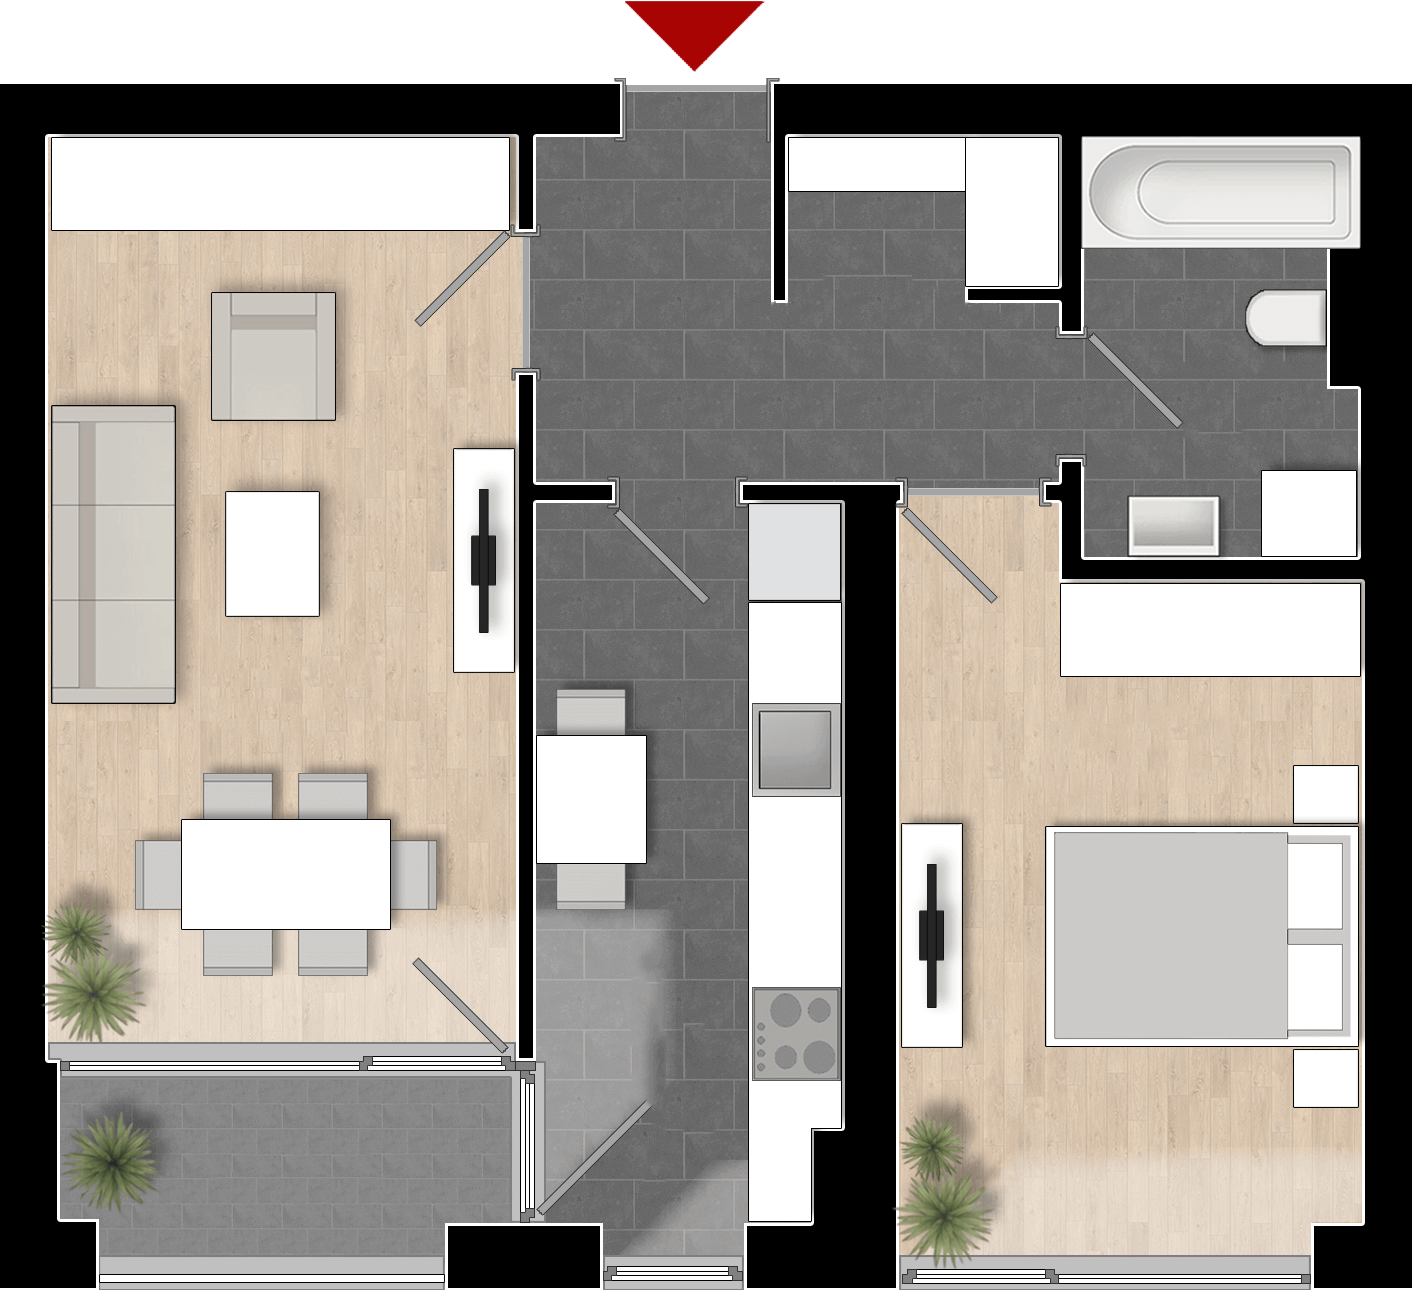  Apartament 602, Tip de apartament 2A cu 2 camere 